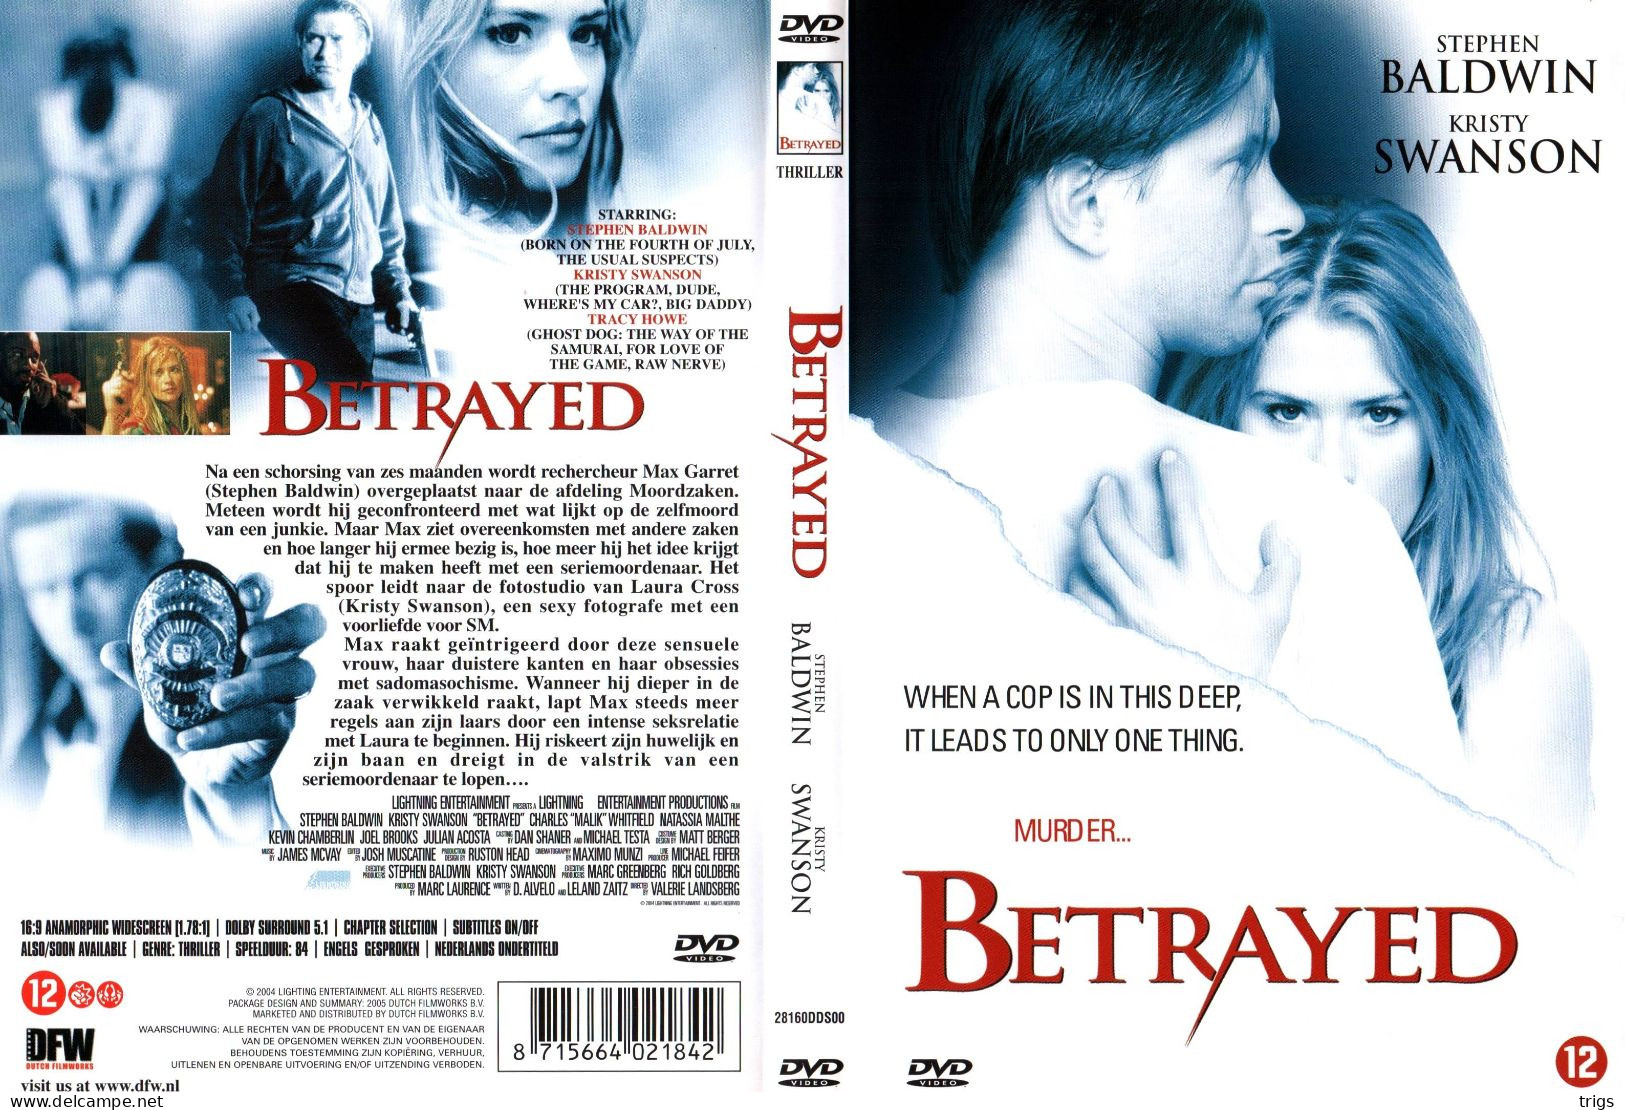 DVD - Betrayed - Polizieschi